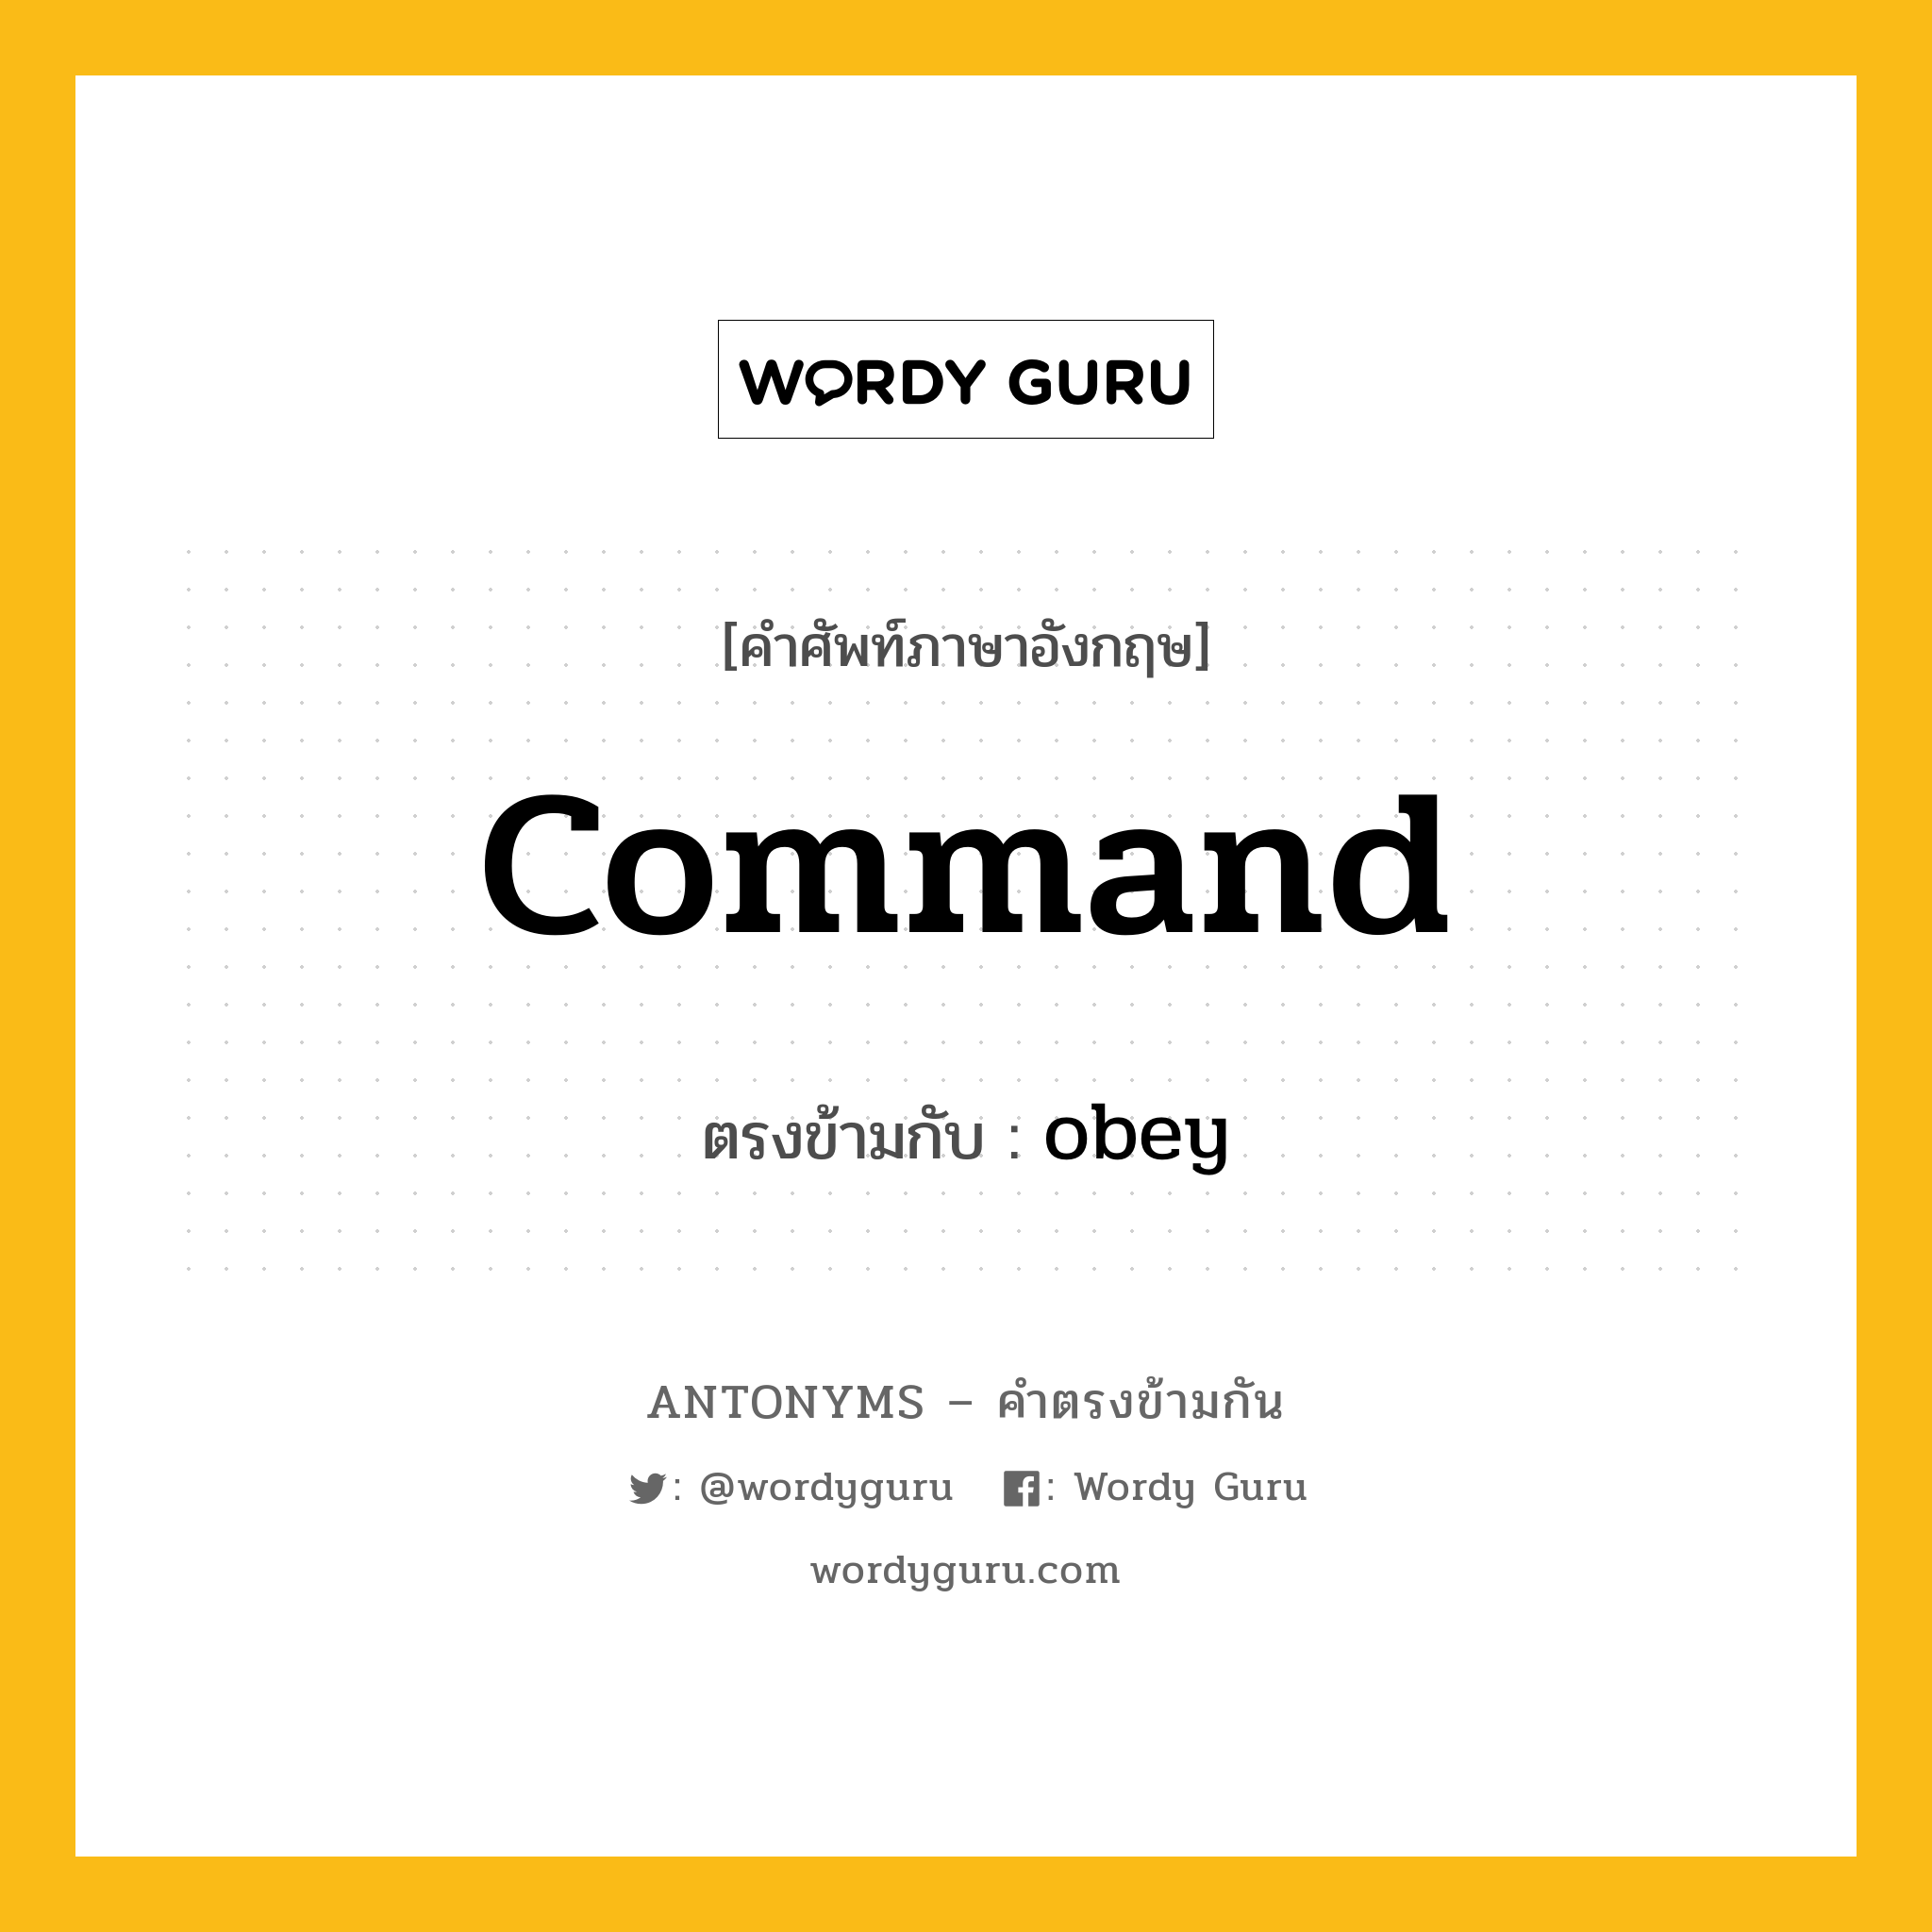 command เป็นคำตรงข้ามกับคำไหนบ้าง?, คำศัพท์ภาษาอังกฤษ command ตรงข้ามกับ obey หมวด obey